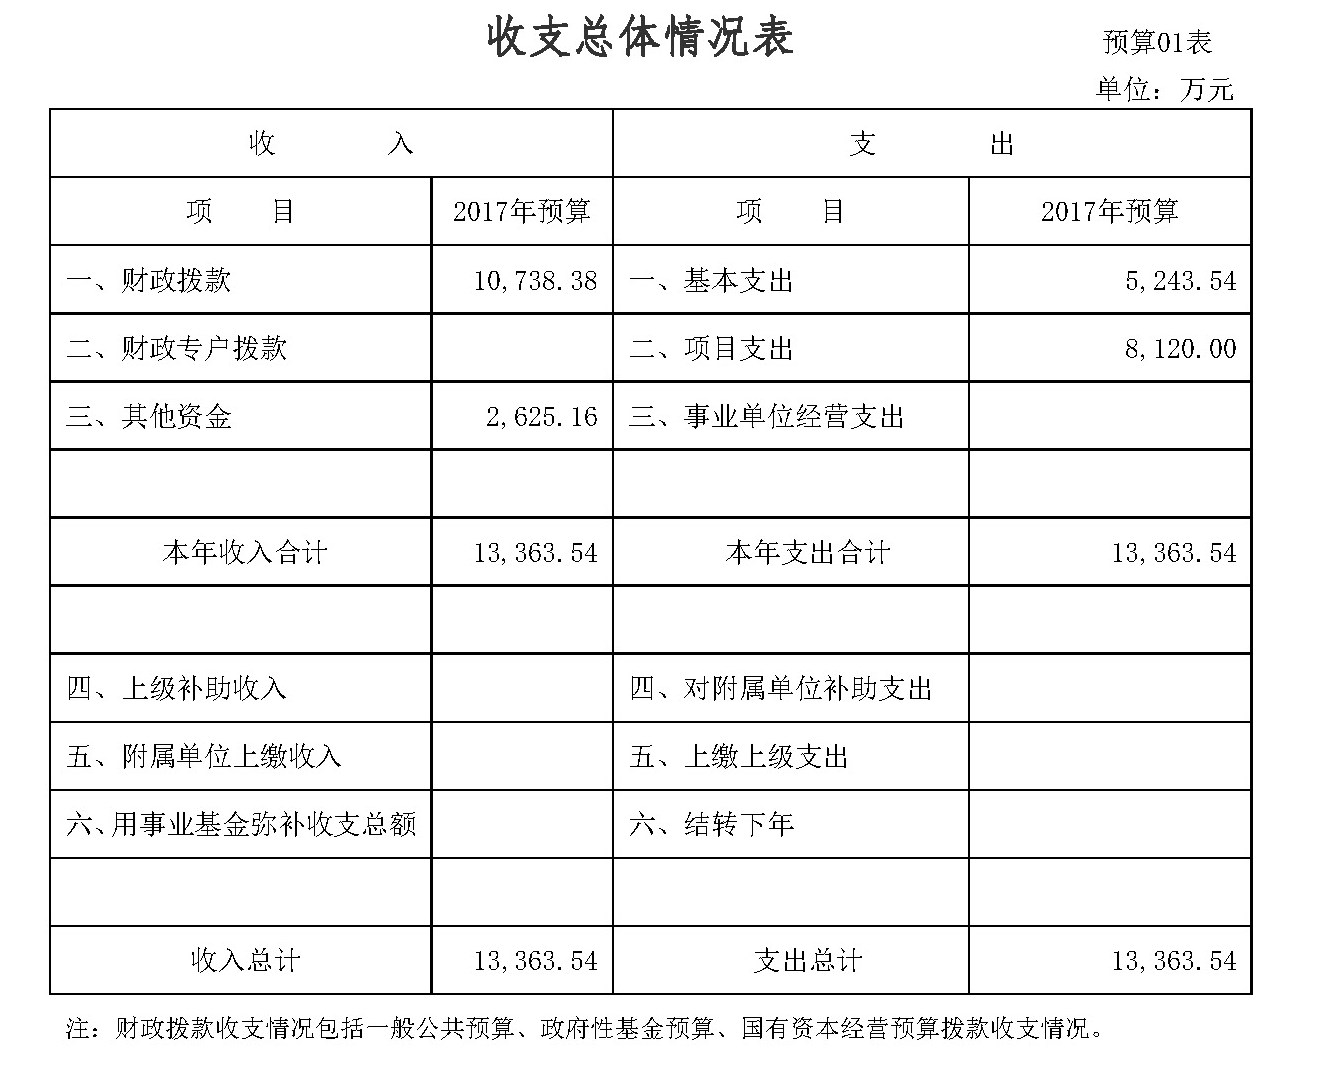 广东省住房和城乡建设厅2017年部门预算公开1